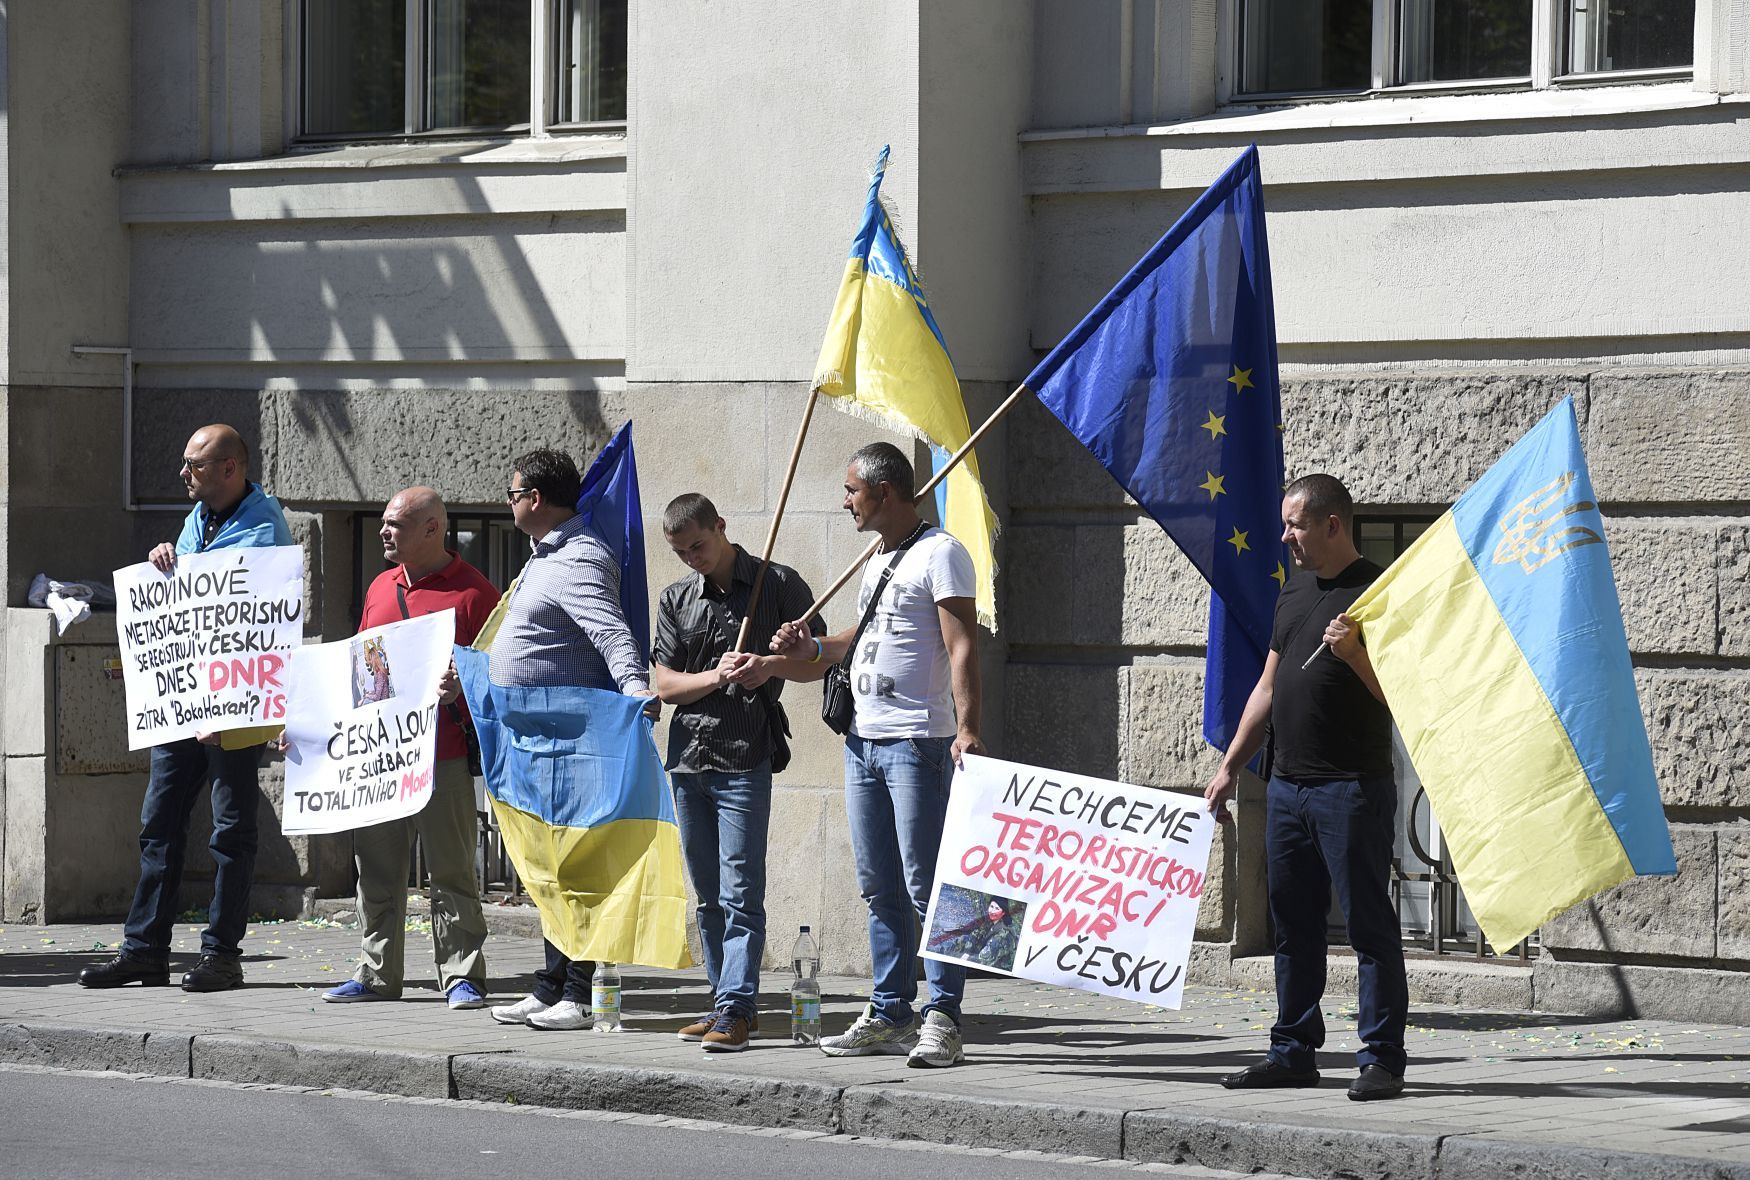 Otevírání zastupitelského centra Doněcké lidové republiky v Ostravě, protest